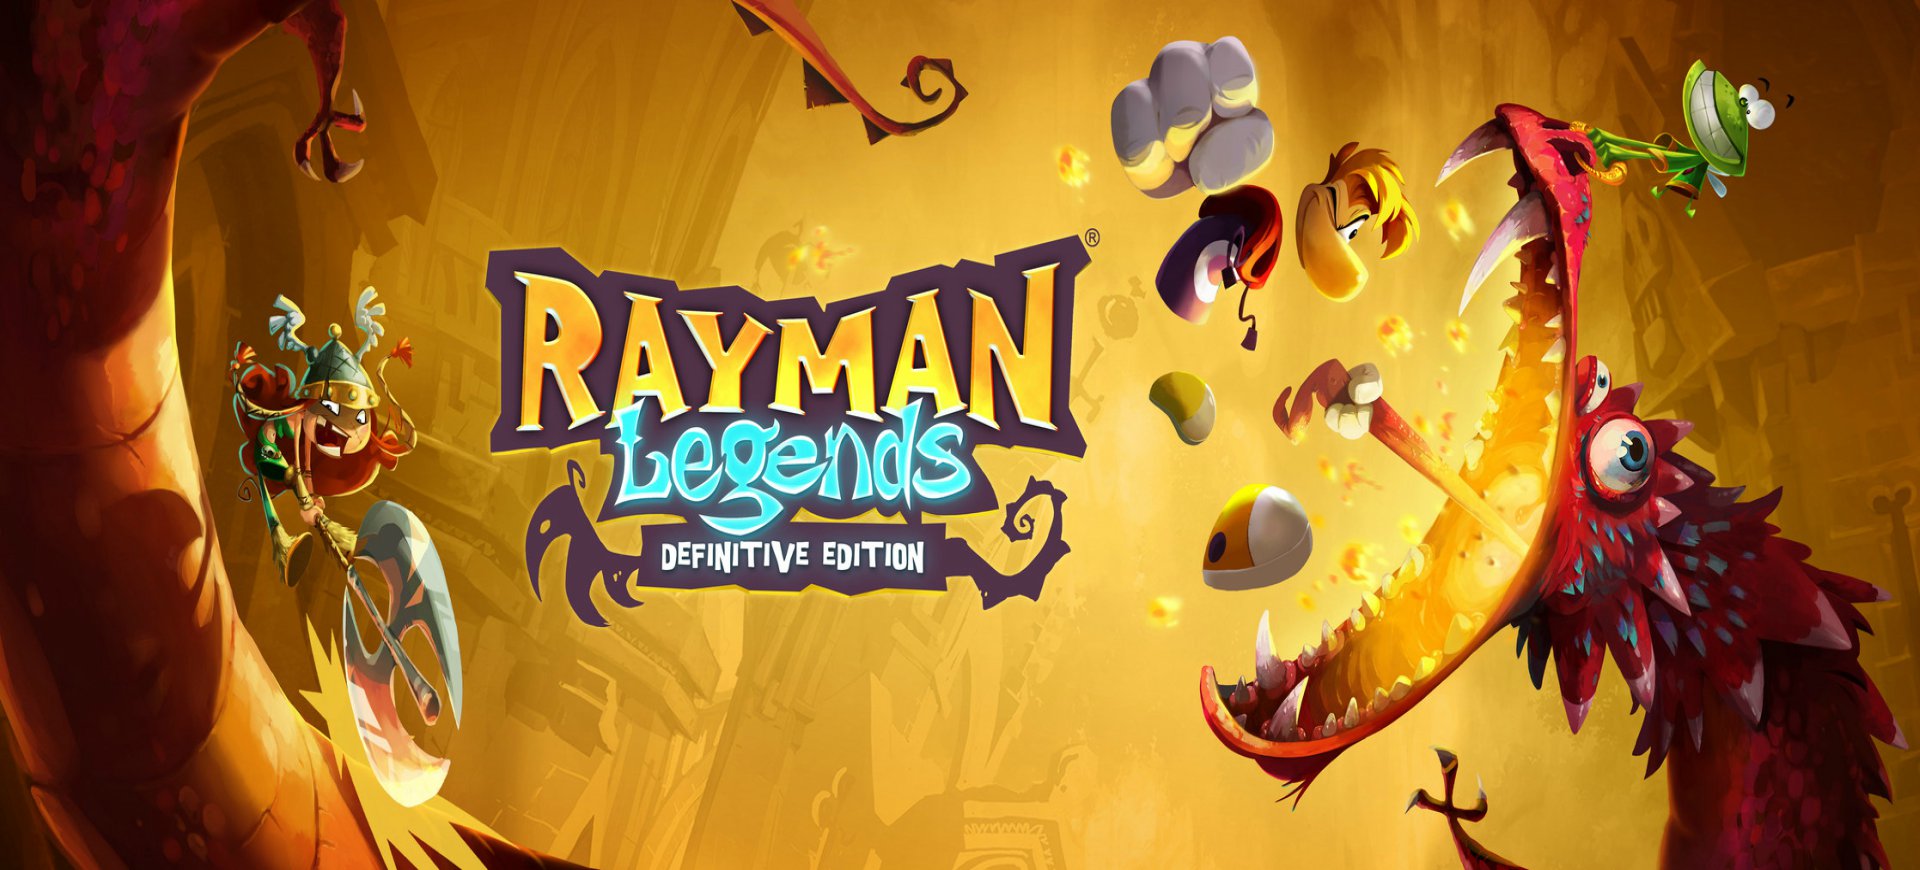 Rayman Legends đến với Nintendo Switch vào giữa tháng Chín - Tin Game